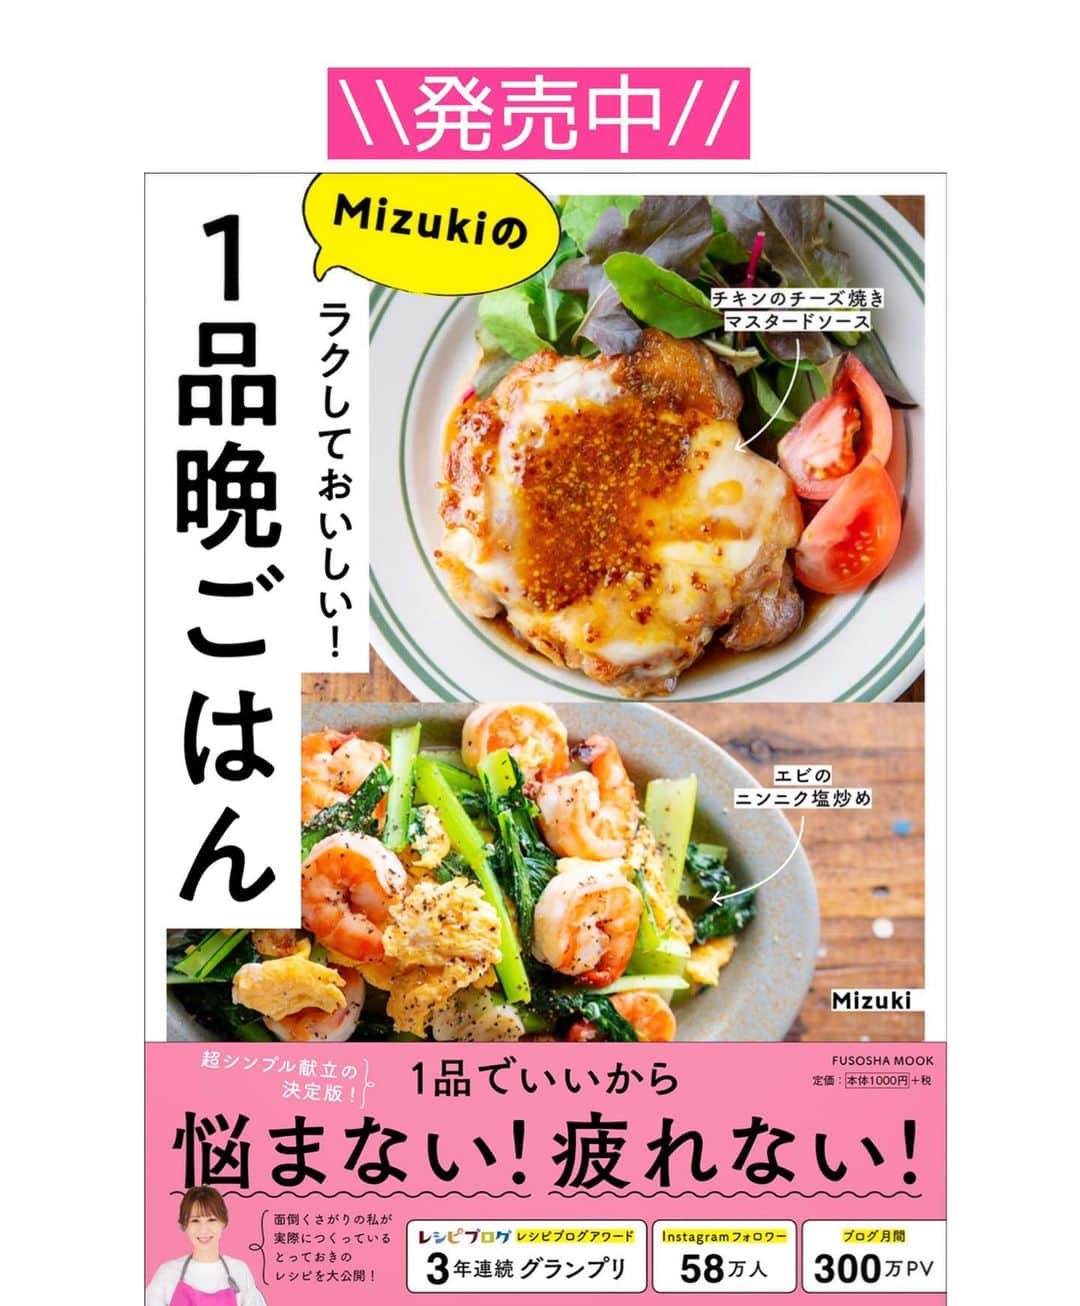 Mizuki【料理ブロガー・簡単レシピ】さんのインスタグラム写真 - (Mizuki【料理ブロガー・簡単レシピ】Instagram)「・﻿ 【#レシピ 】ーーーーーーーーーーー﻿ ♡あっさりジューシー！焼き餃子♡﻿ ーーーーーーーーーーーーーーーーー﻿ ﻿ ﻿ ﻿ おはようございます(*^^*)﻿ ﻿ 今日ご紹介させていただくのは﻿ うちの定番 \\ 焼き餃子 //﻿ ﻿ あっさりとジューシーな味わいで﻿ いくらでも食べられますよ(*´艸`)﻿ キャベツは塩揉みなしで加え﻿ 甘みと食感を楽しみます♡♡﻿ ﻿ とっても簡単にできるので﻿ よかったらお試し下さいね(*^^*)﻿ もちろんコスパも抜群です♩﻿ ﻿ ﻿ ﻿ ＿＿＿＿＿＿＿＿＿＿＿＿＿＿＿＿＿＿＿＿﻿ 【25個分】﻿ 豚ひき肉...150g﻿ キャベツ..150g﻿ ニラ...1/3束﻿ ●酒...大1﻿ ●鶏がらスープ・醤油・ごま油...各小1﻿ ●にんにく・生姜...各チューブ2cm﻿ ●塩こしょう...少々﻿ 餃子の皮...25枚﻿ サラダ油...小1﻿ (仕上げ用)ごま油...小1﻿ ﻿ ﻿ 1.キャベツはみじん切り、ニラは小口切りにする。ボウルにひき肉、キャベツ、ニラ、●を入れてよく混ぜる。﻿ 2. 餃子の皮に1をのせ、皮の縁に水をつけてひだを寄せてとじる。﻿ 3.フライパンにサラダ油を伸ばし、2を並べてから中火にかける。焼き色が付いたら水100ml(分量外)を注ぎ、蓋をして弱めの中火で5分蒸し焼きにする。﻿ 4.蓋を外し、中火にして水分を飛ばす。鍋肌から仕上げ用ごま油を加え、カリッと仕上げる。﻿ ￣￣￣￣￣￣￣￣￣￣￣￣￣￣￣￣￣￣￣￣﻿ ﻿ ﻿ ﻿ ﻿ 《ポイント》﻿ ♦︎包まず棒餃子にしても◎﻿ (参考)→#小松菜棒餃子m﻿ ♦︎餃子に器を被せ、フライパンごとひっくり返して盛り付けています(油はねに注意)☆﻿ ♦︎酢醤油、酢こしょう、ポン酢、ラー油など、お好みのたれで召し上がれ♩﻿ ﻿ ﻿ ﻿ ﻿ ﻿ ﻿ ﻿ ﻿ 📕新刊発売中📕﻿ 【ラクしておいしい！#1品晩ごはん 】﻿ ￣￣￣￣￣￣￣￣￣￣￣￣￣￣￣￣￣﻿ 私たちだってヘトヘトな日がある•••﻿ 毎日何品も作っていられない•••﻿ もうごはんに悩みたくない😢﻿ そんな時、1品ごはんはいかがでしょう？﻿ というご提案です✨﻿ ﻿ 【1品ごはん】は﻿ 副菜いらずで全てがシンプル！﻿ ￣￣￣￣￣￣￣￣￣￣￣￣￣￣￣￣￣￣﻿ 一品つくるだけでいいから﻿ 献立を考えなくてよし！﻿ ￣￣￣￣￣￣￣￣￣￣￣￣￣￣￣￣￣￣﻿ 悩まない、疲れない、﻿ 気力や時間がなくてもなんとかなる！﻿ ￣￣￣￣￣￣￣￣￣￣￣￣￣￣￣￣￣￣﻿ そんな頼りになる﻿ 便利なお助けごはんです☺️💕﻿ (ハイライトに🔗貼っています✨)﻿ ￣￣￣￣￣￣￣￣￣￣￣￣￣￣￣￣￣﻿ ﻿ ﻿ ﻿ ﻿ ﻿ ⭐️発売中⭐️﻿ ＿＿＿＿＿＿＿＿＿＿＿＿＿＿＿＿＿＿﻿ しんどくない献立、考えました♩﻿ \15分でいただきます/﻿ 📕#Mizukiの2品献立 📕﻿ ﻿ 和食をもっとカジュアルに♩﻿ \毎日のごはんがラクになる/﻿ 📘#Mizukiの今どき和食 📘﻿ ﻿ ホケミレシピの決定版♩﻿ \はじめてでも失敗しない/﻿ 📙ホットケーキミックスのお菓子 📙﻿ ﻿ NHKまる得マガジンテキスト☆﻿ ホットケーキミックスで﻿ 📗絶品おやつ&意外なランチ📗﻿ ￣￣￣￣￣￣￣￣￣￣￣￣￣￣￣￣￣￣﻿ ﻿ ﻿ ﻿ ＿＿＿＿＿＿＿＿＿＿＿＿＿＿＿＿＿＿﻿ レシピを作って下さった際や﻿ レシピ本についてのご投稿には﻿ タグ付け( @mizuki_31cafe )して﻿ お知らせいただけると嬉しいです😊💕﻿ ￣￣￣￣￣￣￣￣￣￣￣￣￣￣￣￣￣￣﻿ ﻿ ﻿ ﻿ ﻿ #餃子#定番#豚ひき肉#キャベツ#Mizuki#簡単レシピ#時短レシピ#節約レシピ#料理#フーディーテーブル#マカロニメイト#おうちごはん#デリスタグラマー#料理好きな人と繋がりたい#料理記録#おうちごはんlover#写真好きな人と繋がりたい#foodpic#cooking#recipe#lin_stagrammer#foodporn#yummy#f52grams#焼き餃子m」1月3日 7時53分 - mizuki_31cafe